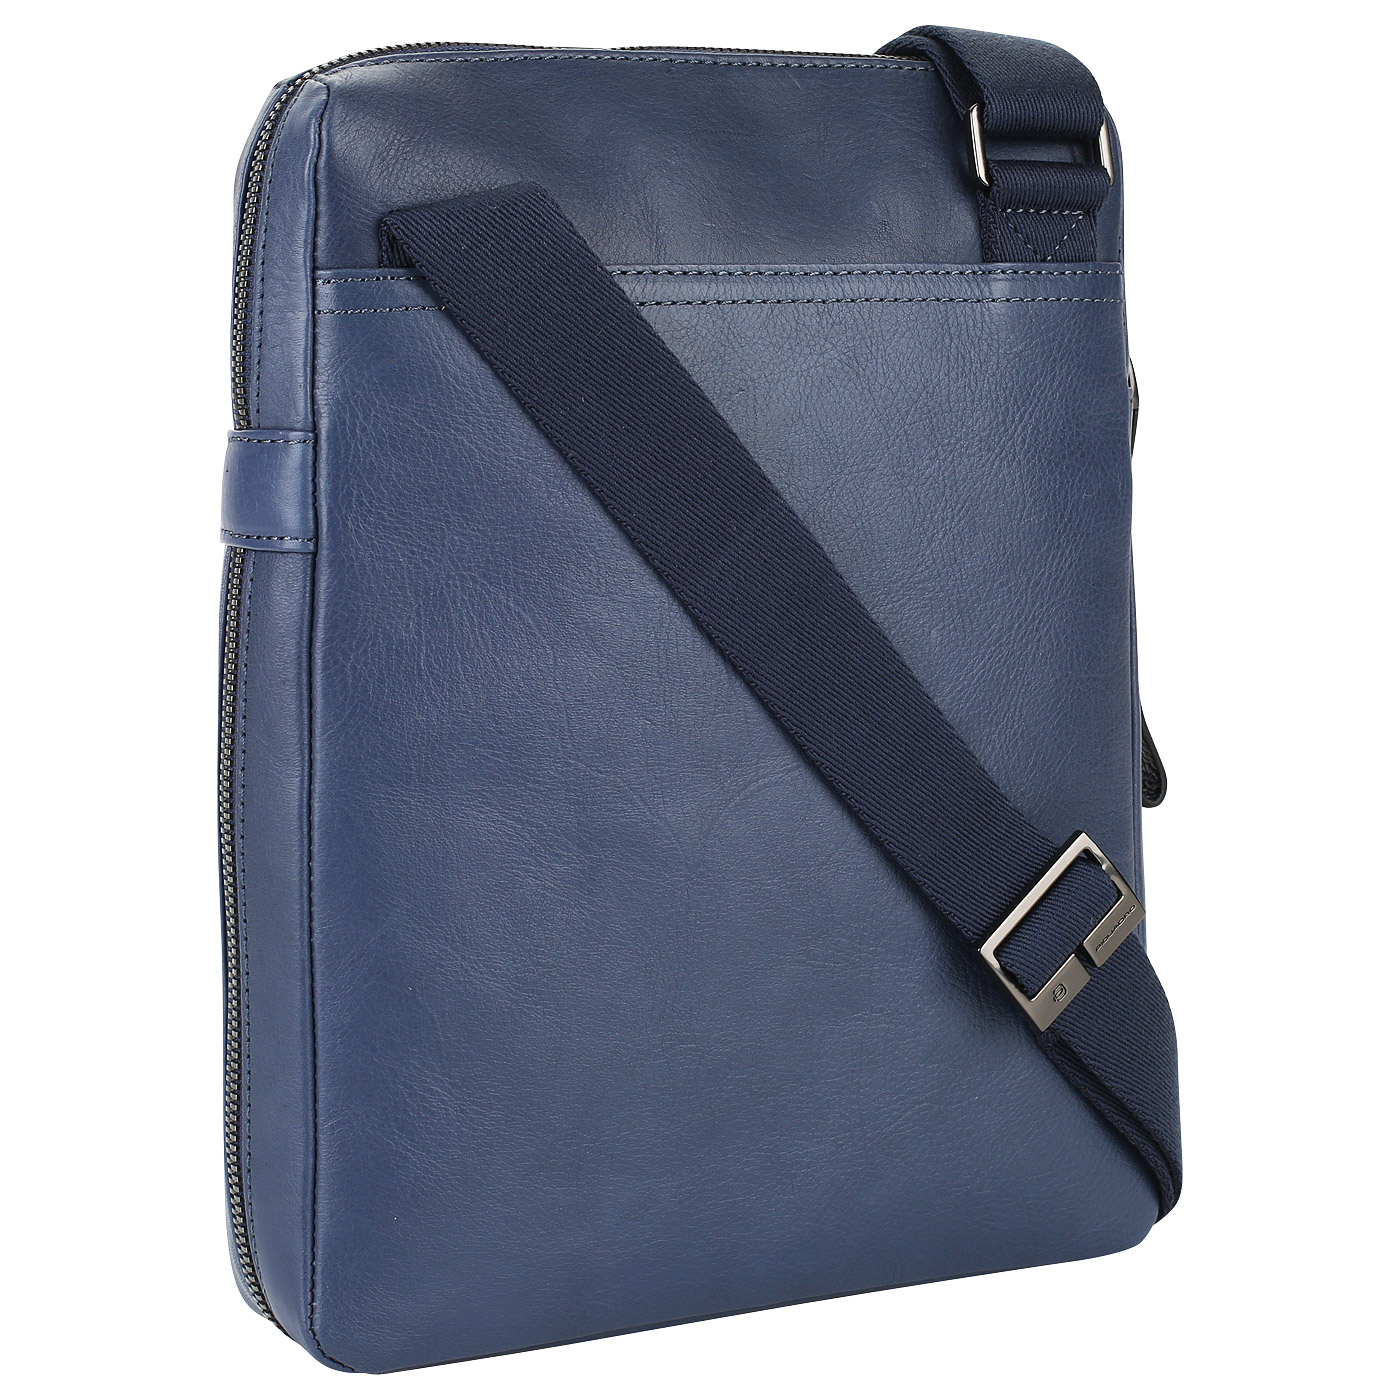 Мужская сумка-планшет из синей кожи Piquadro Pan